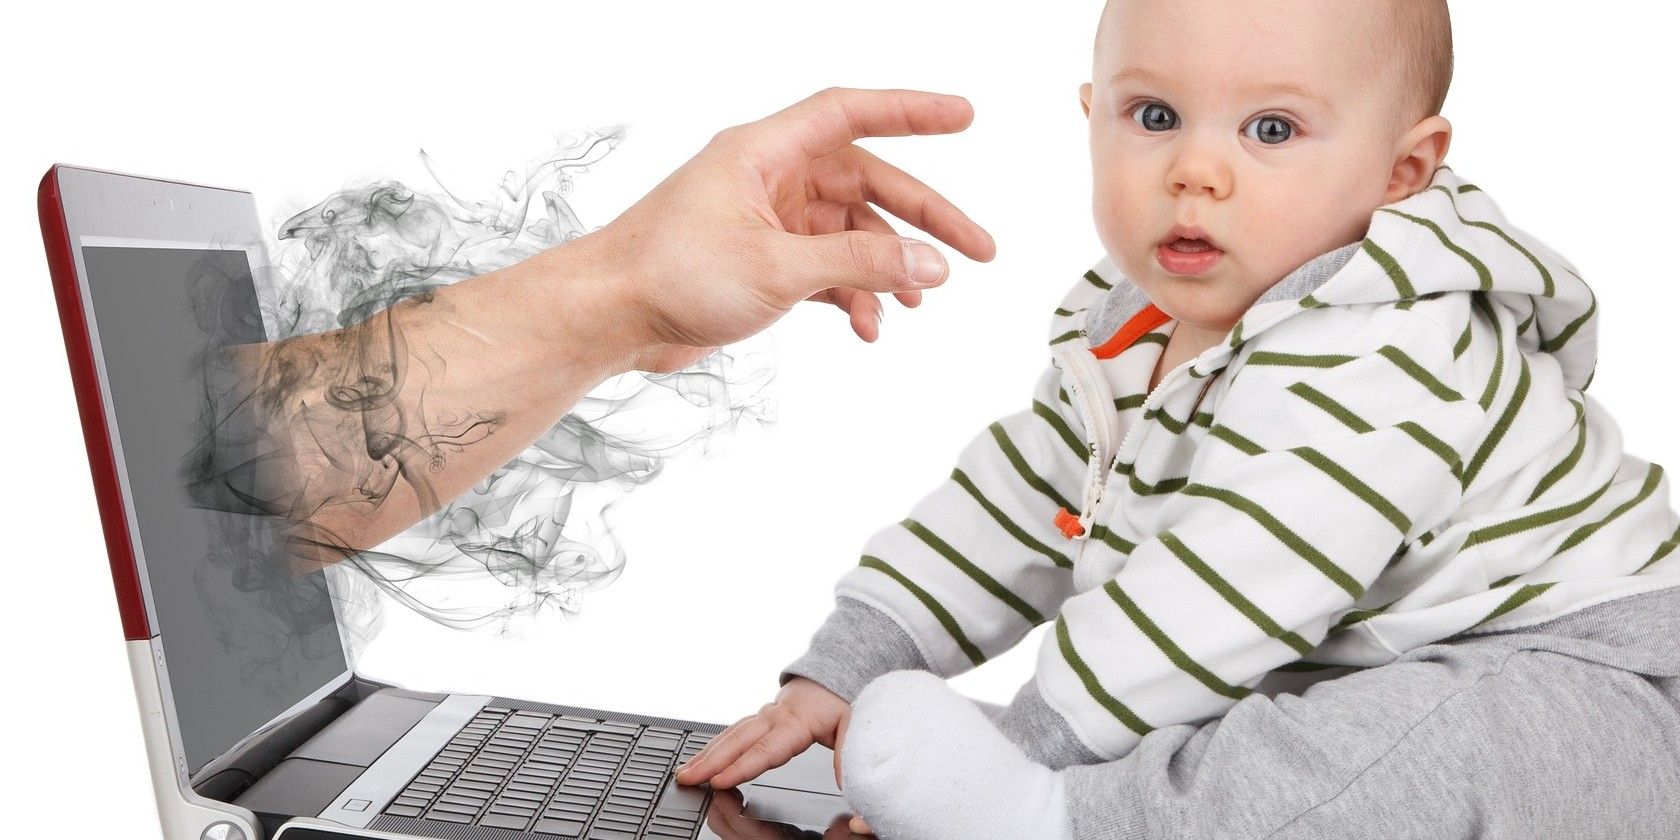 Digital kidnapping babies